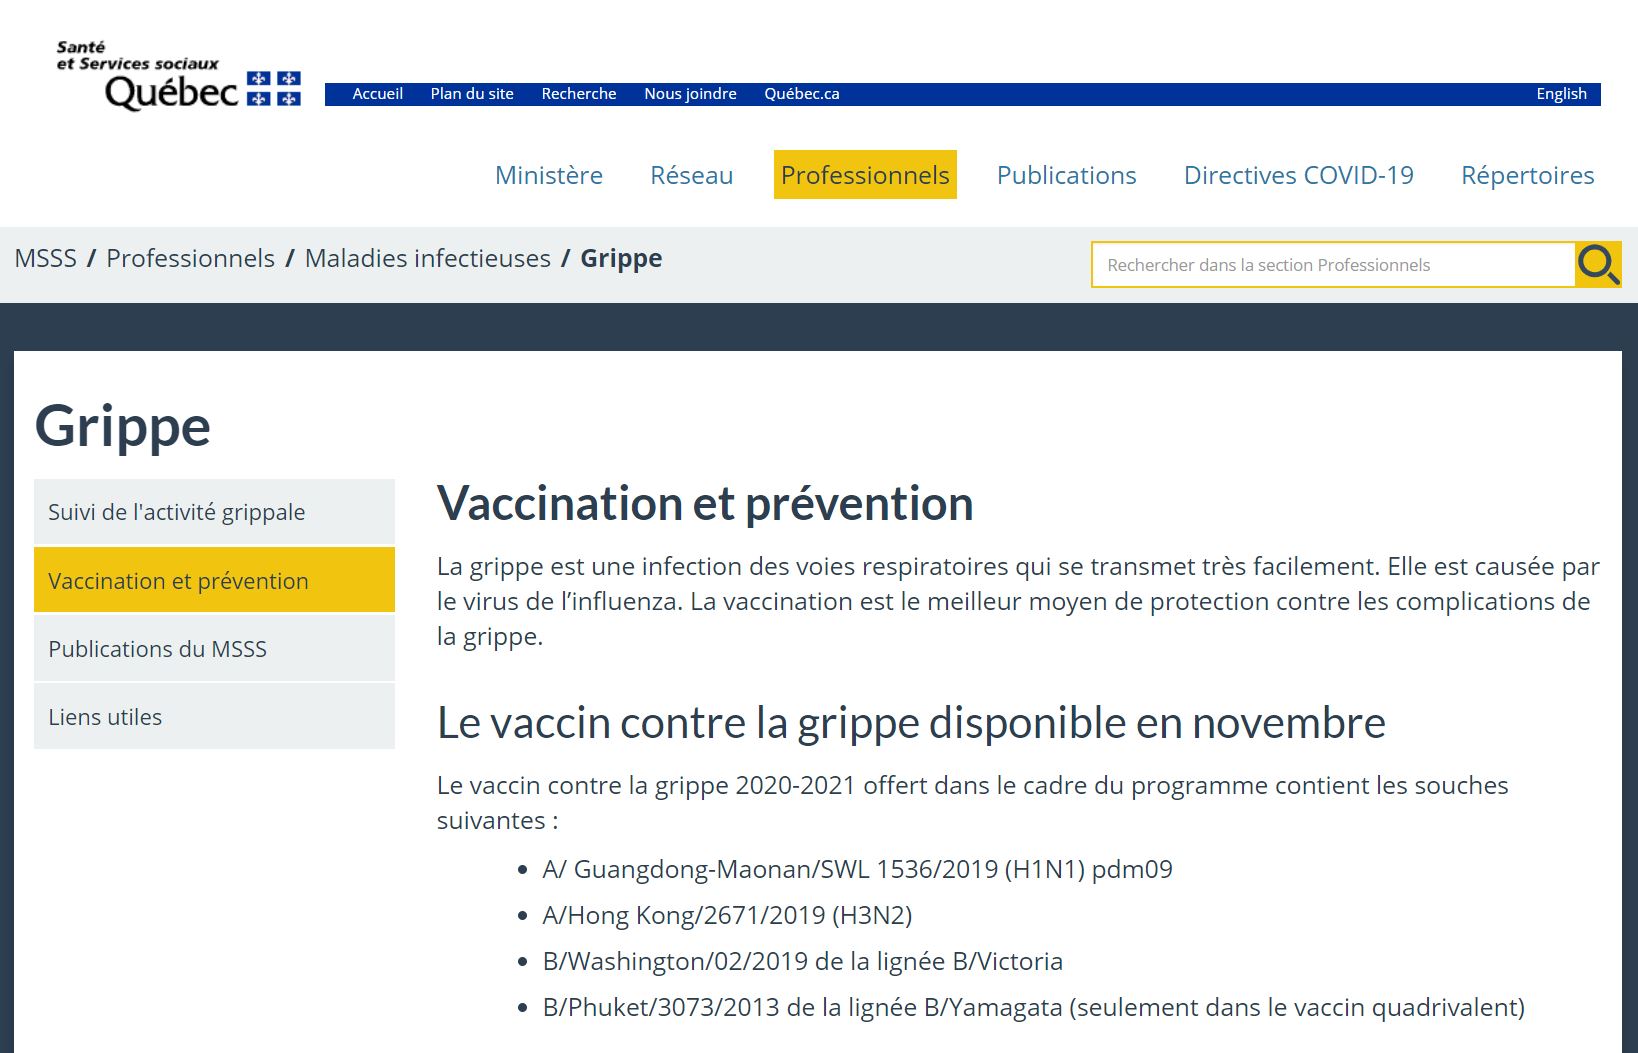 les-4-souches-du-vaccin-contre-la-grippe-en-novembre-2020.JPG